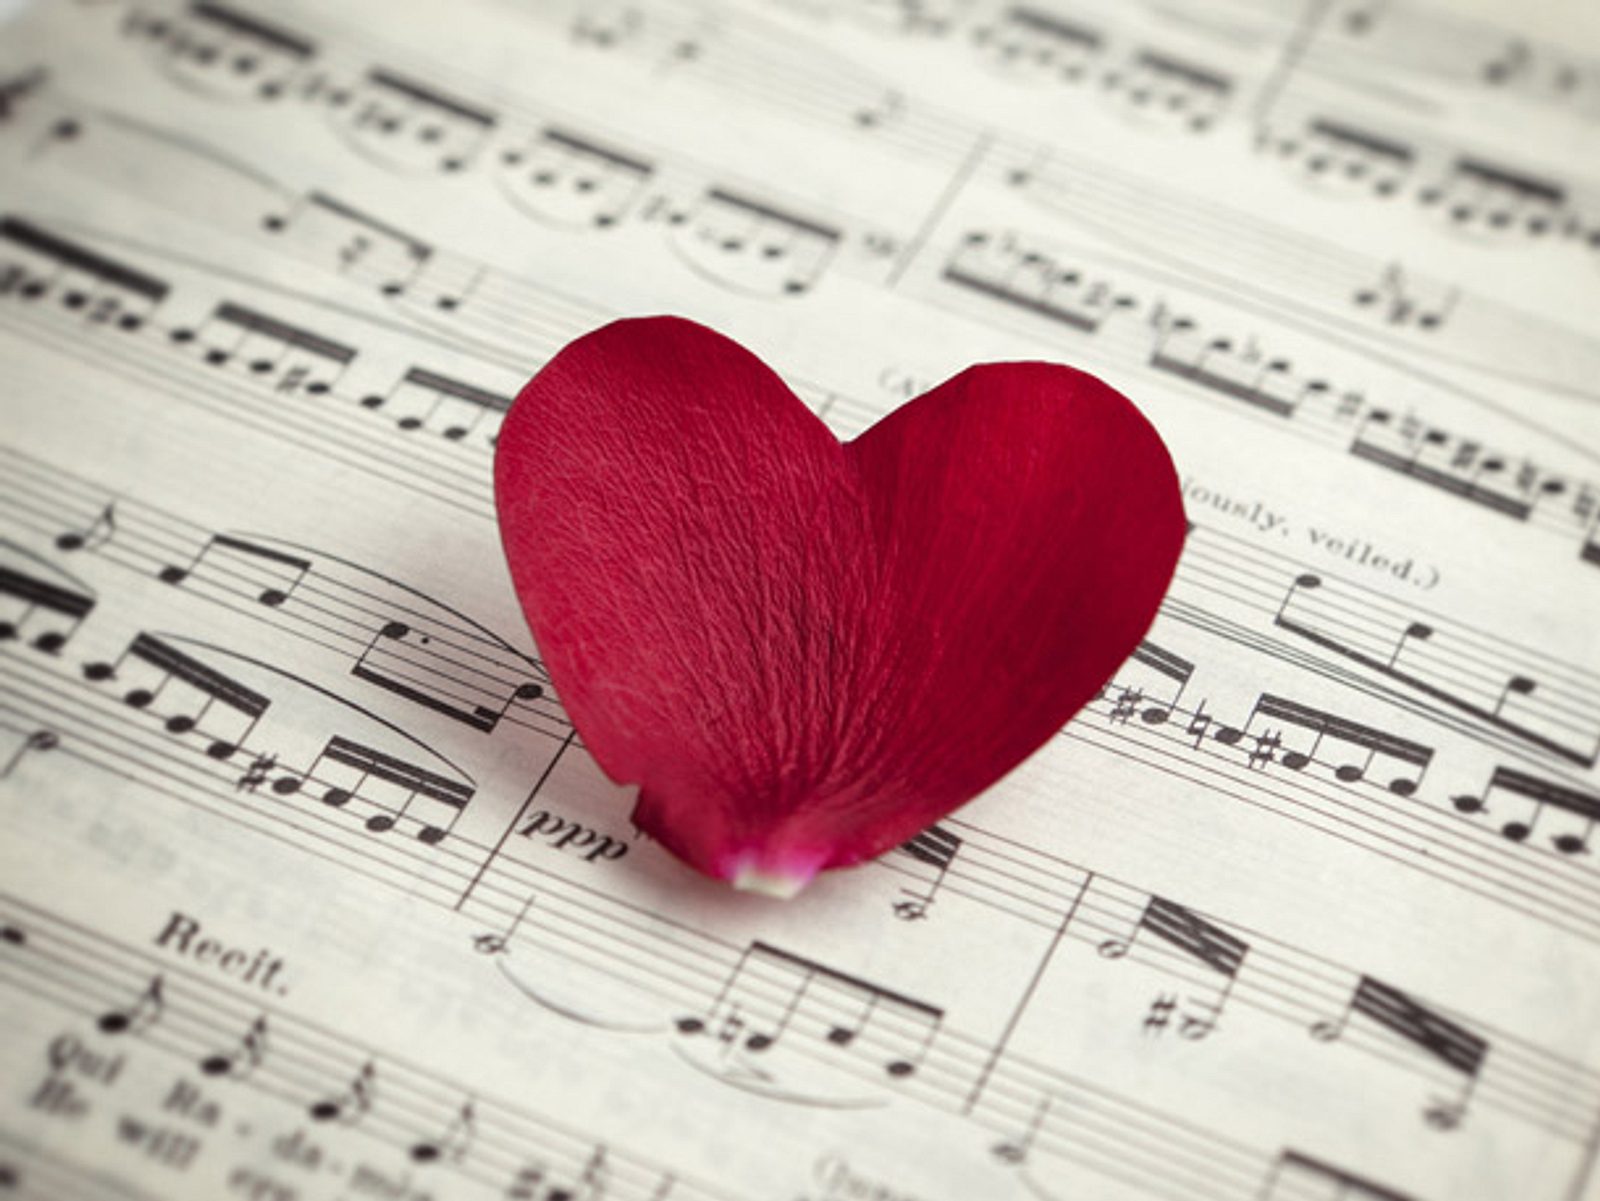 Песенки про любовь. Музыка любви. Красивые картинки про любовь. Романтично и музыкально. Композиция "это любовь".